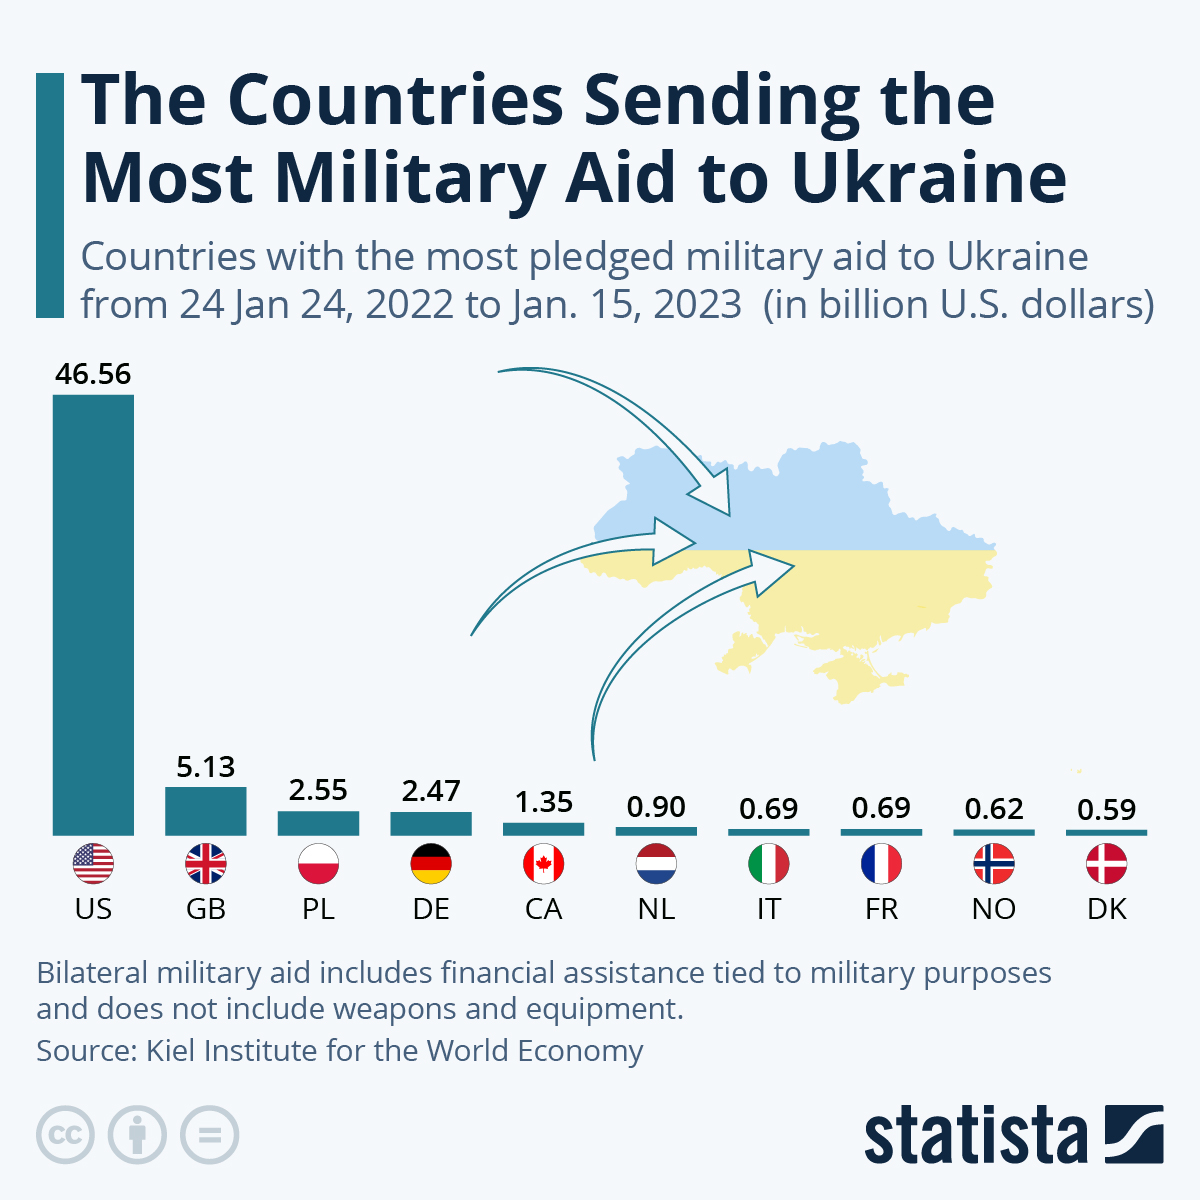 Giữa các quốc gia giàu có, Ba Lan lại là quốc gia đóng góp nhiều thứ 3 cho Ukraine